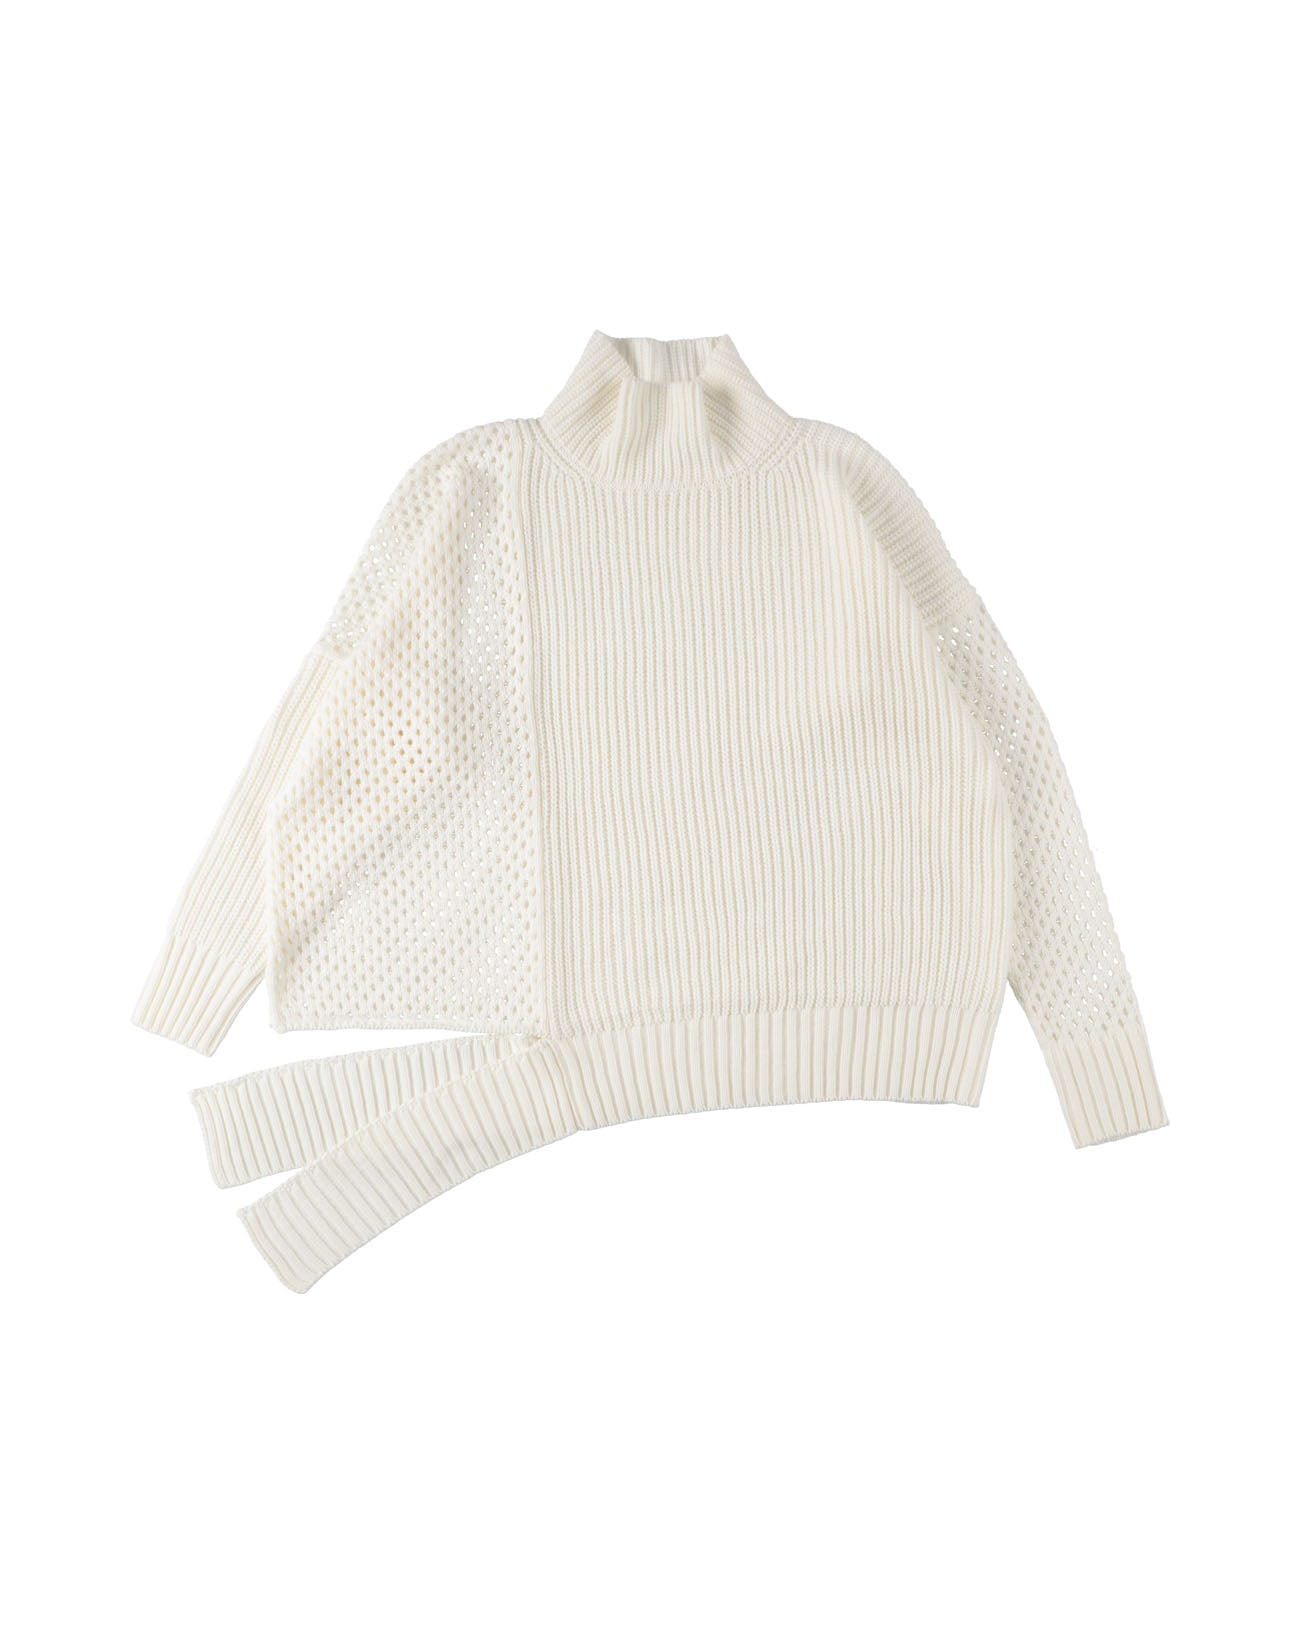 Mesh asymmetry knit - white